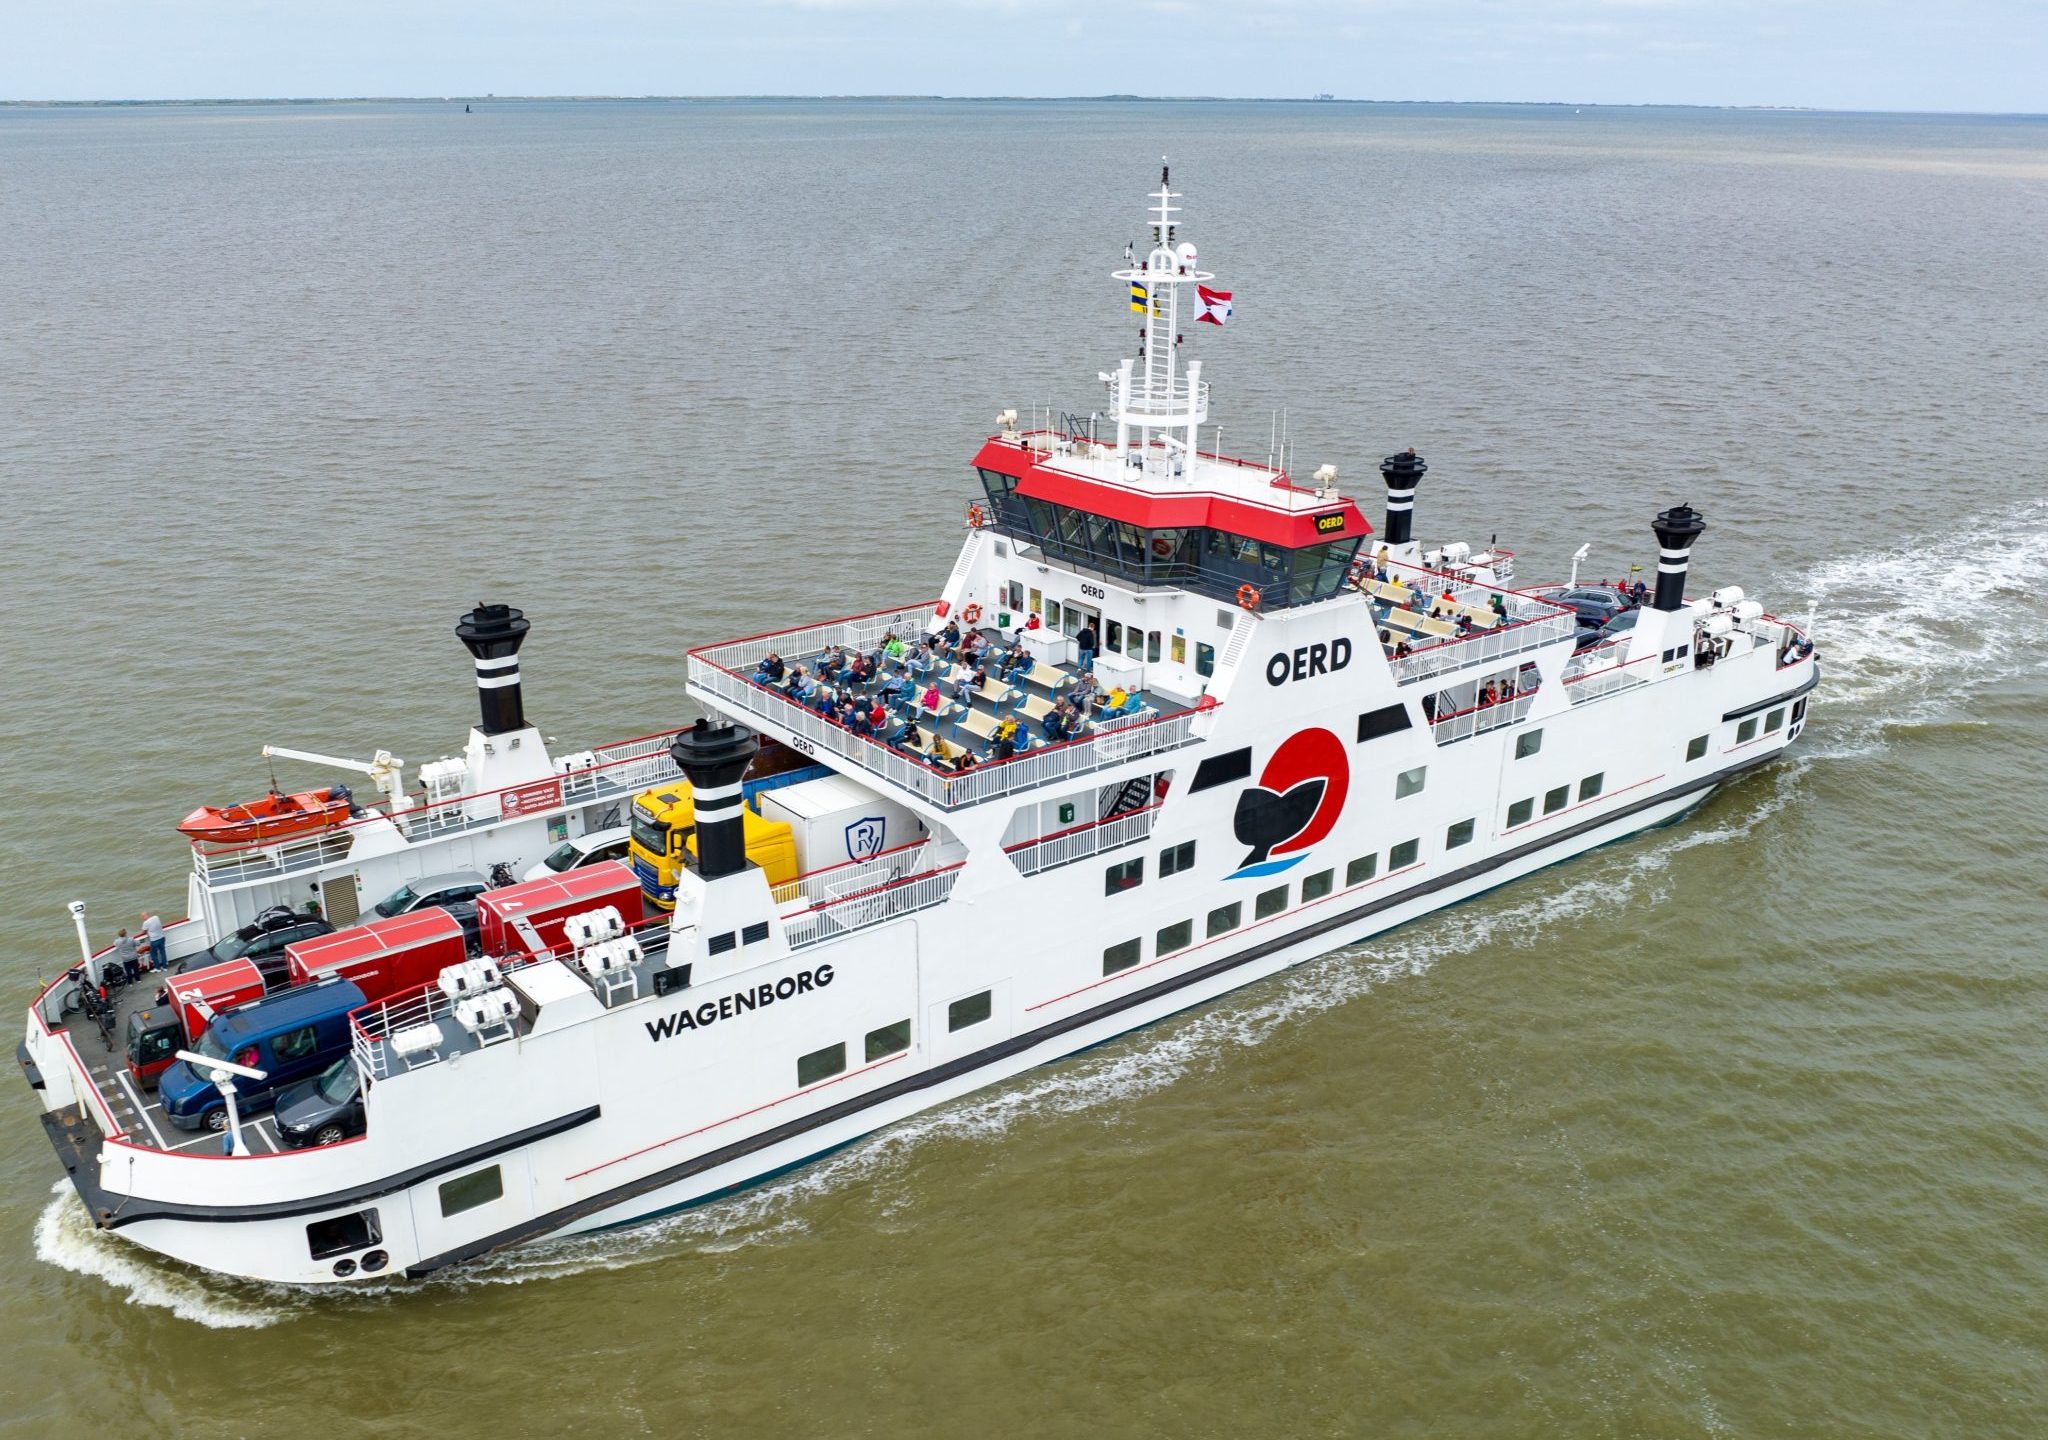 Veerboot Oerd van Rederij Wagenborg.